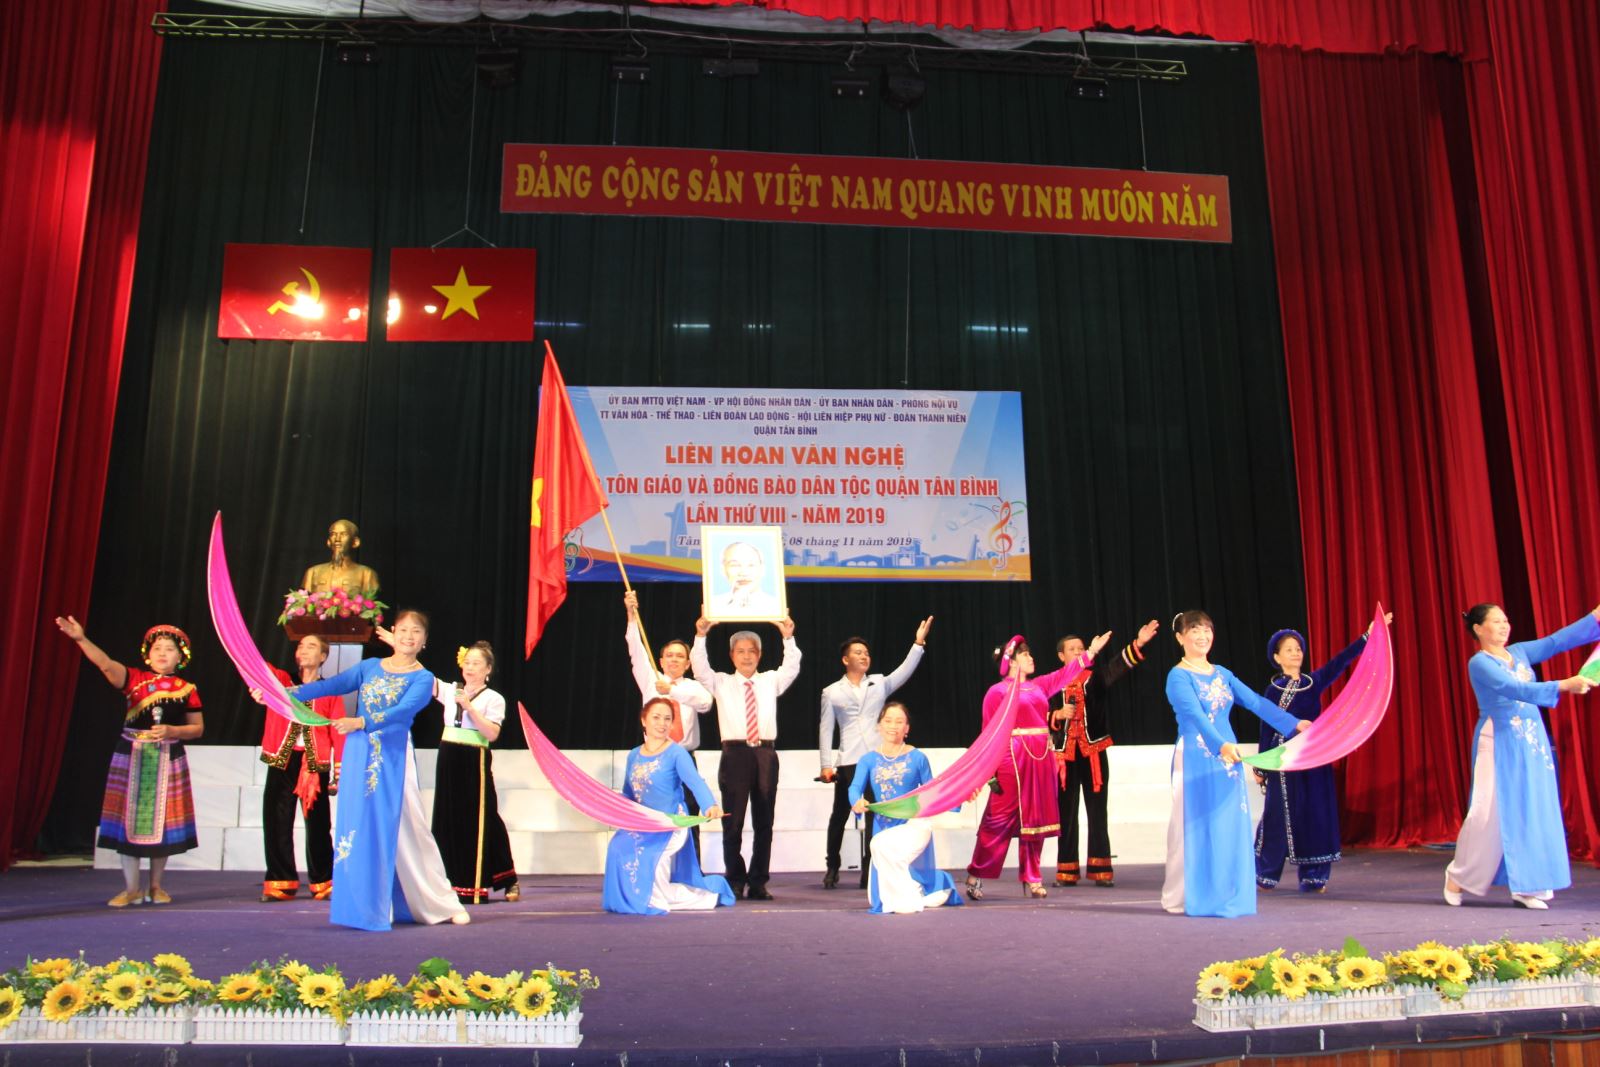 Quận Tân Bình tổ chức Liên hoan văn nghệ các Tôn giáo và đồng bào Dân tộc, lần thứ VIII năm 2019